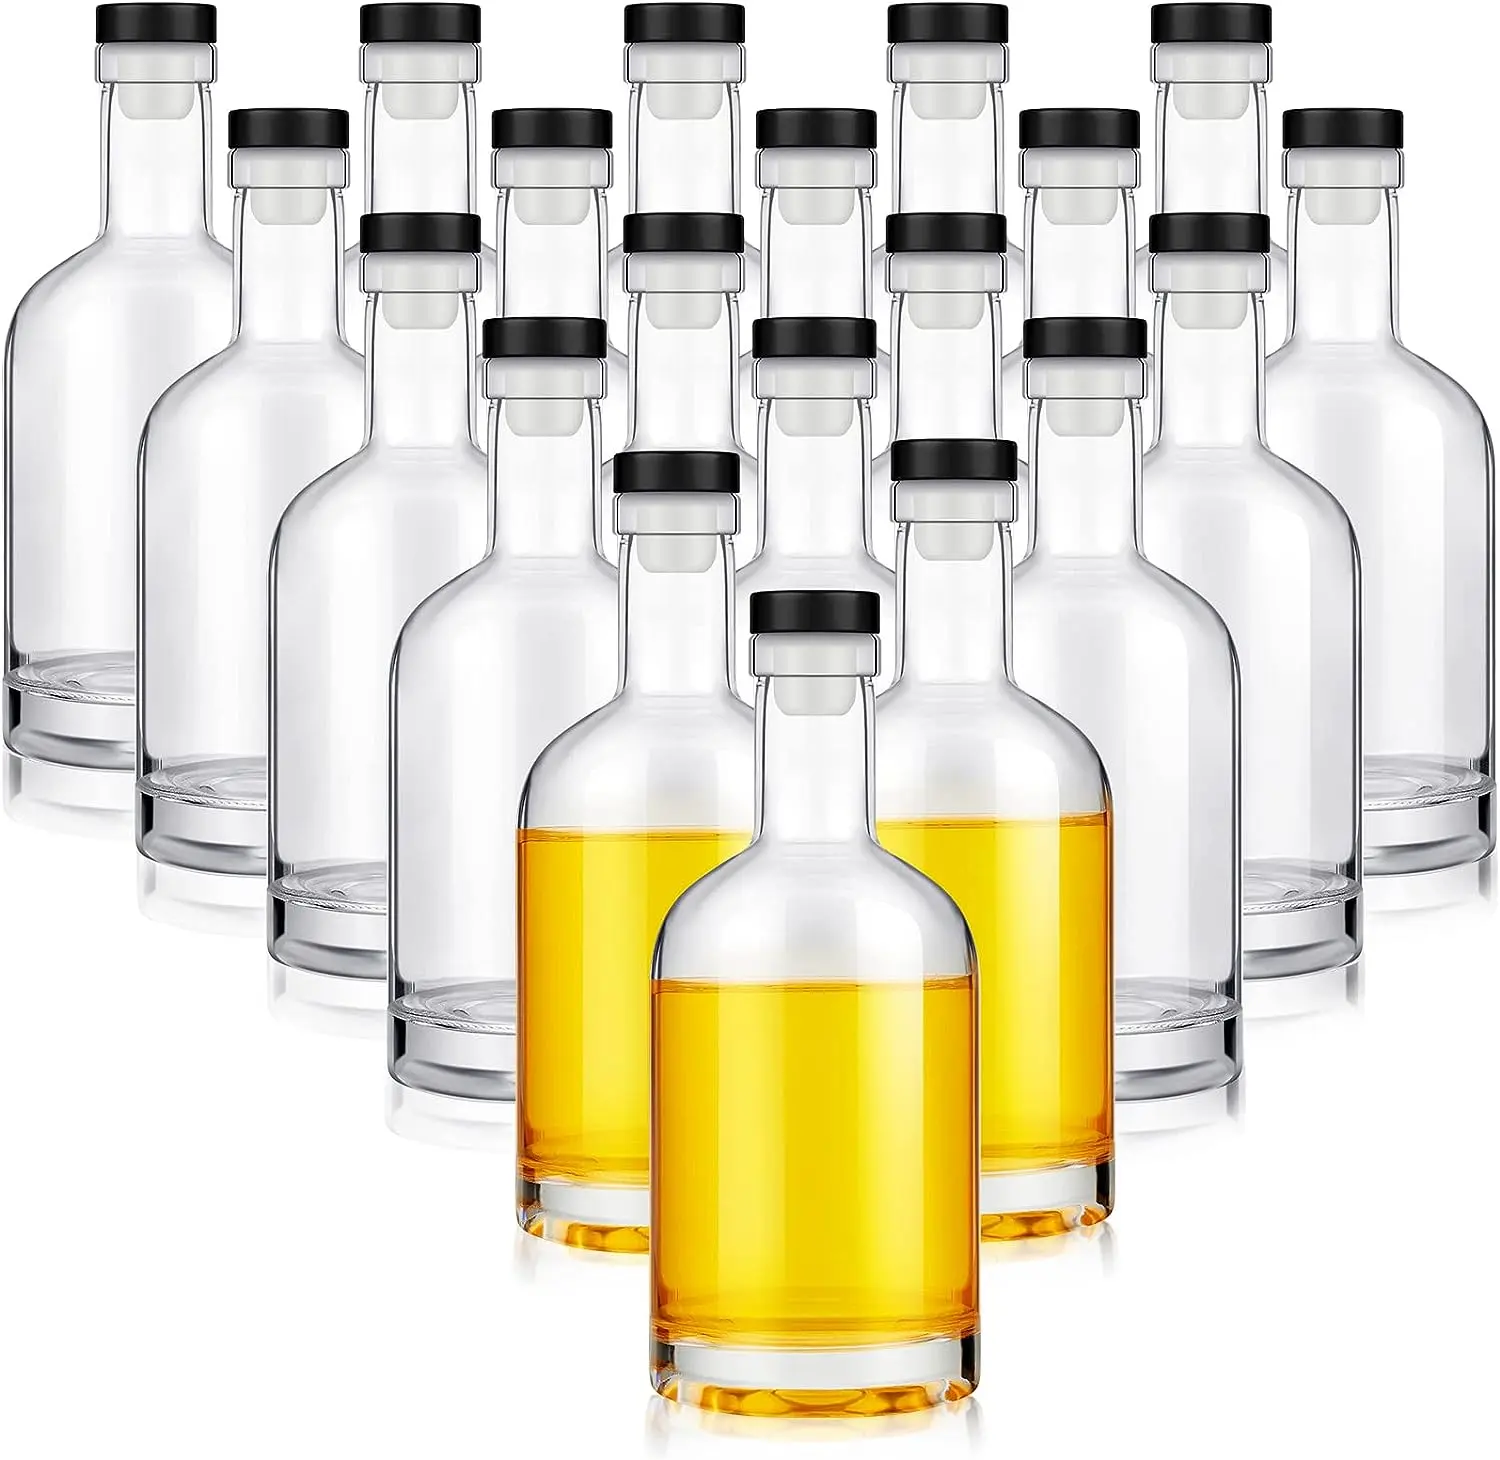 Garrafa de vidro reciclável de 700ml para bebidas espirituosas transparente em formato personalizado, uísque, tequila, vodka e conhaque com cortiça